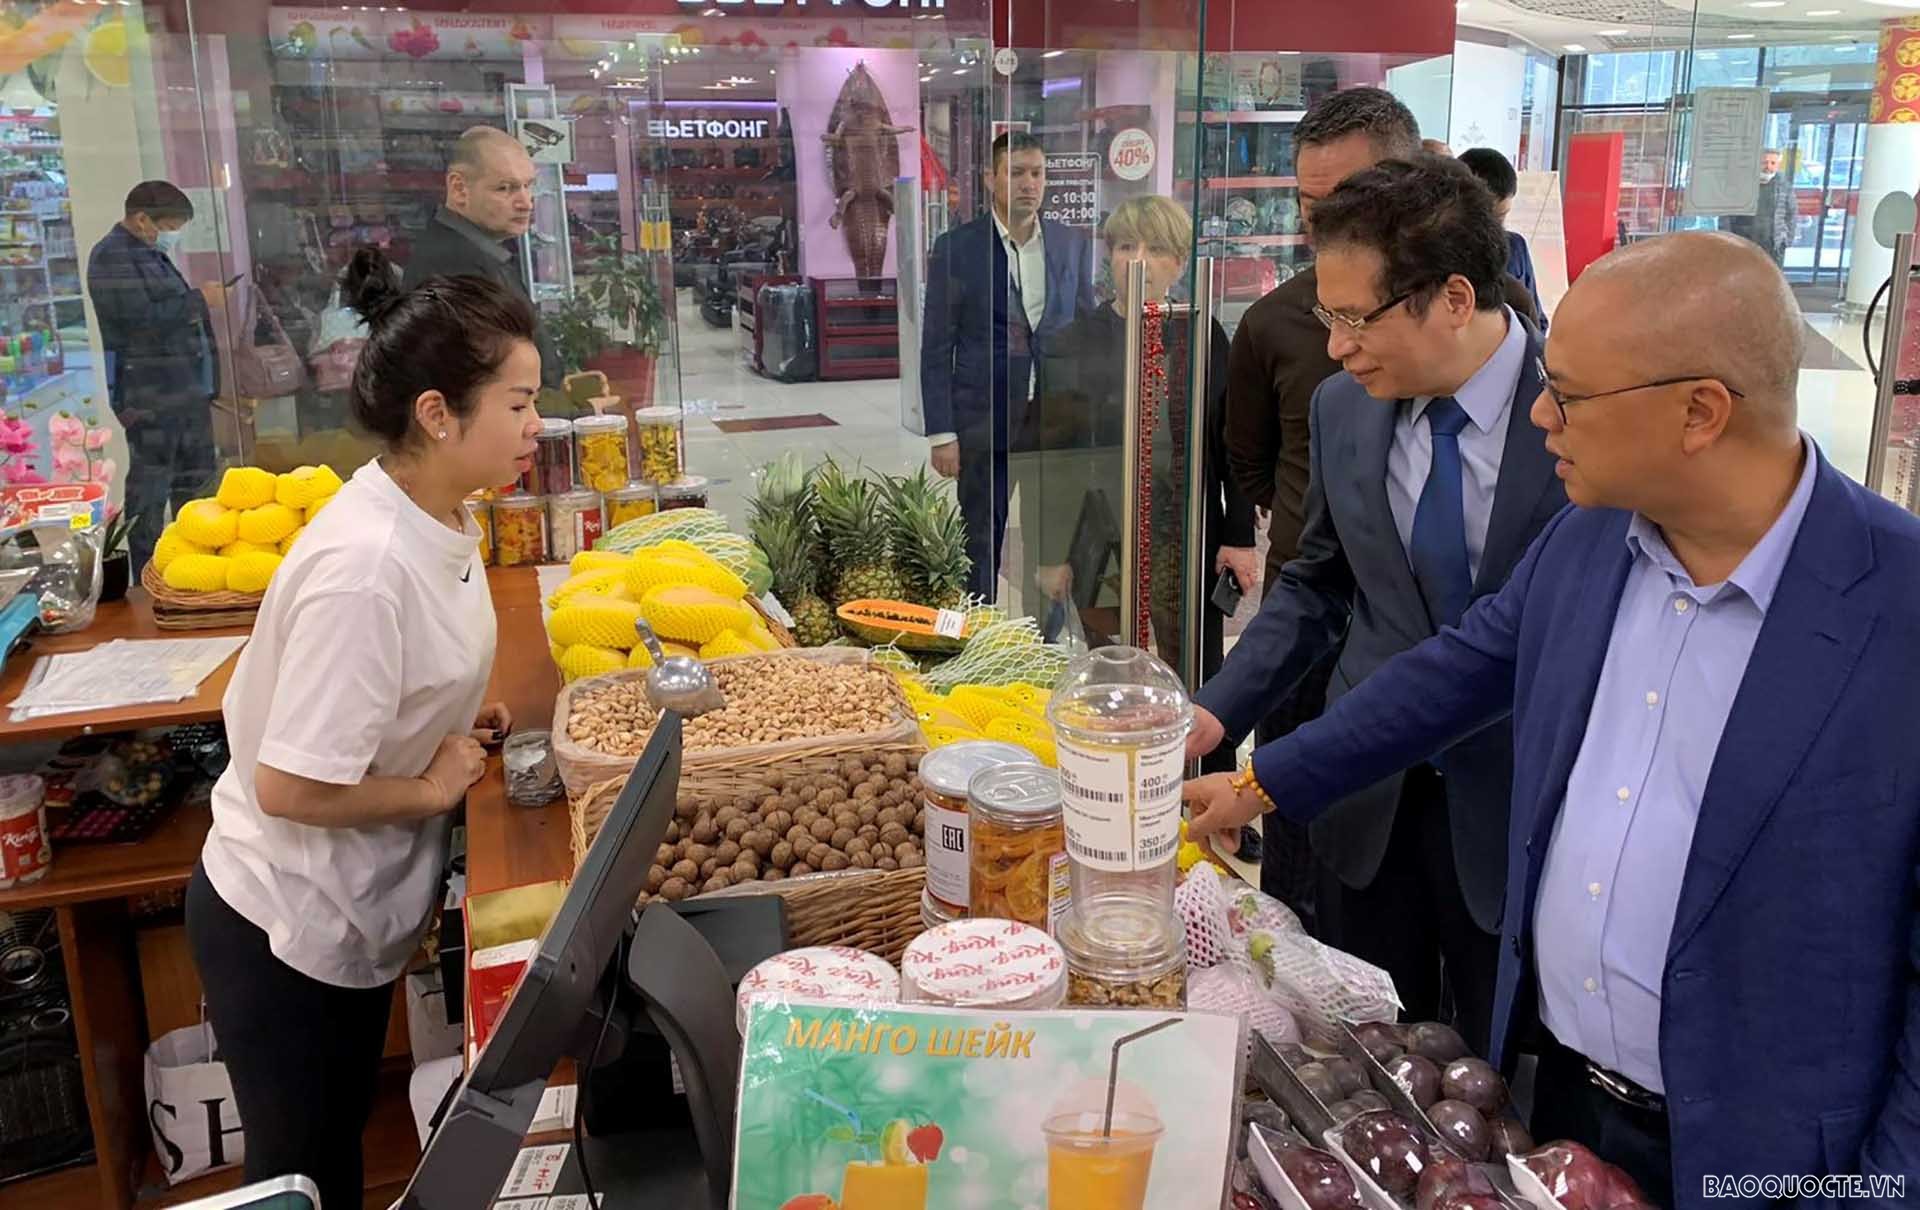 Đại sứ Đặng Minh Khôi thăm hỏi các hộ gia đình đang buôn bán Tổ hợp đa chức năng “Hà Nội-Moscow”.